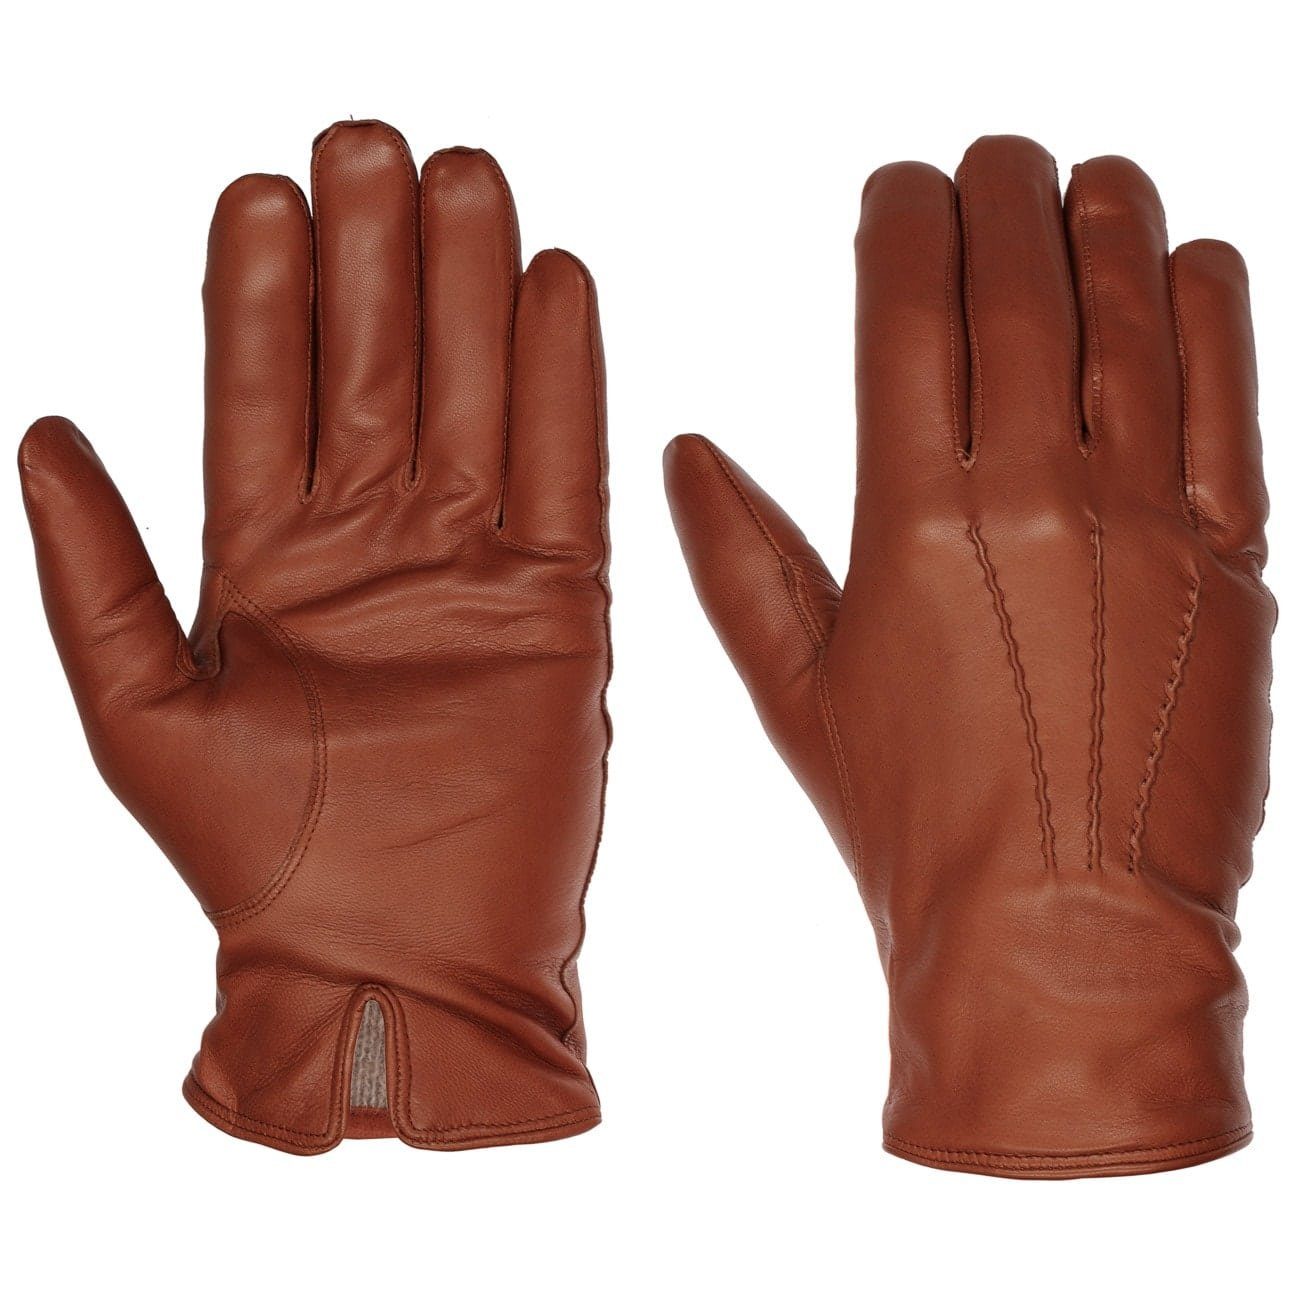 Caridei Lederhandschuhe Fingerhandschuhe mit Futter, Made in Italy braun | Handschuhe